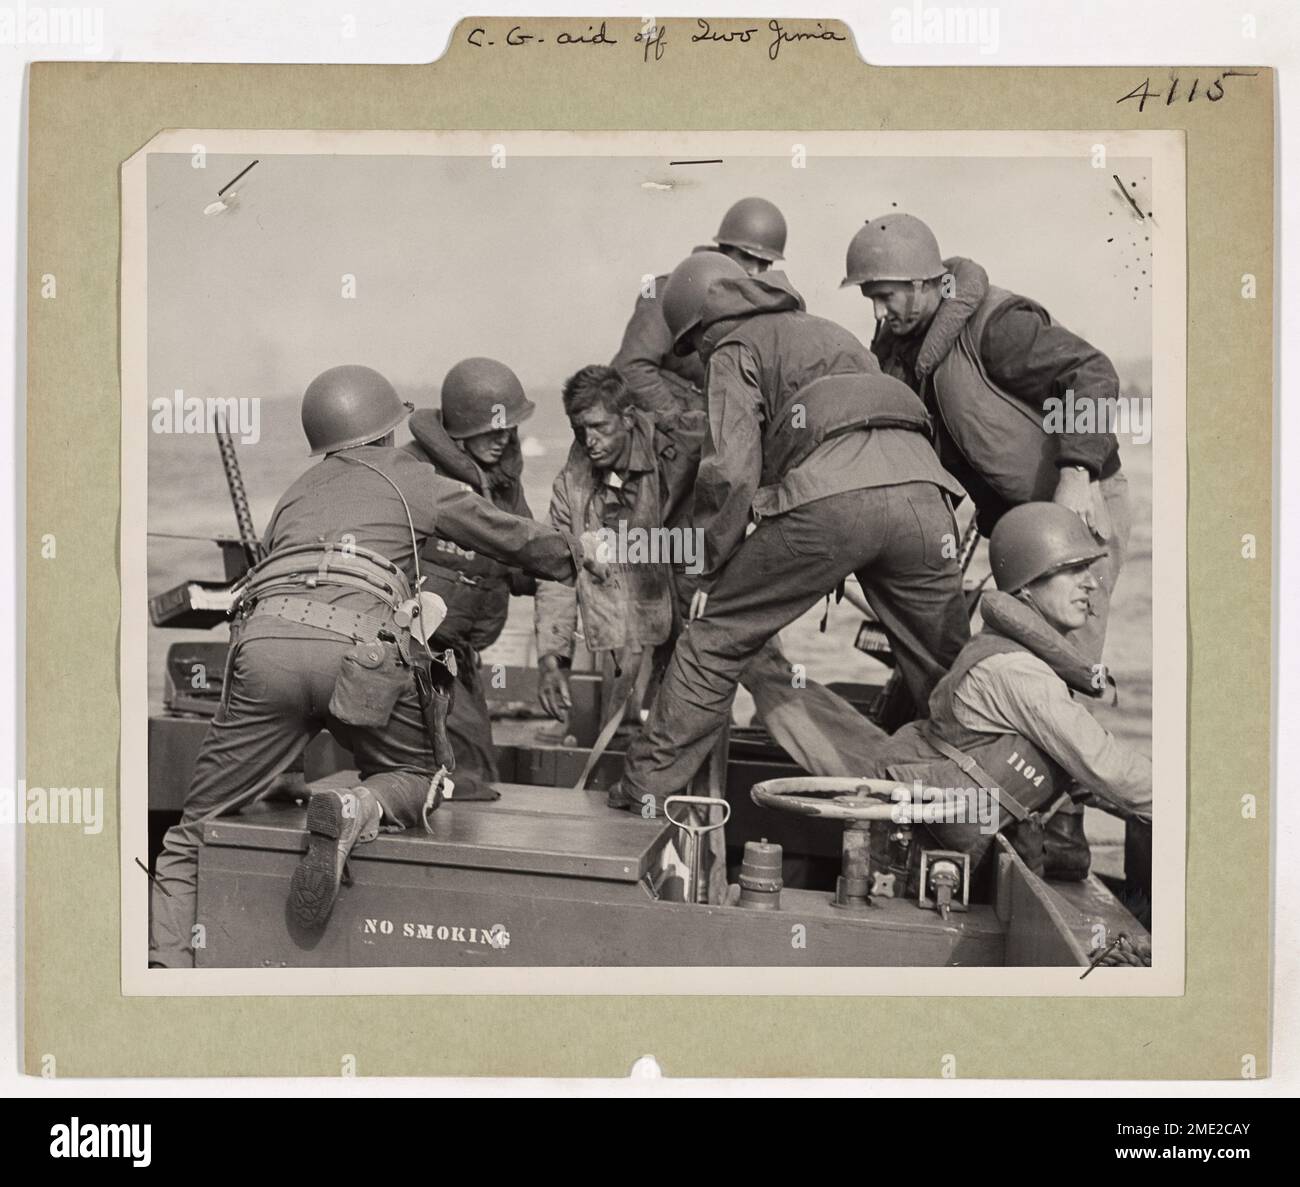 Der Verwundete Marine Bekommt Hilfe Von Iwo Jima. Dieses Bild zeigt einen verwundeten Marine, der von Küstenwachmännern auf ein Landungsschiff verlegt wurde. Stockfoto